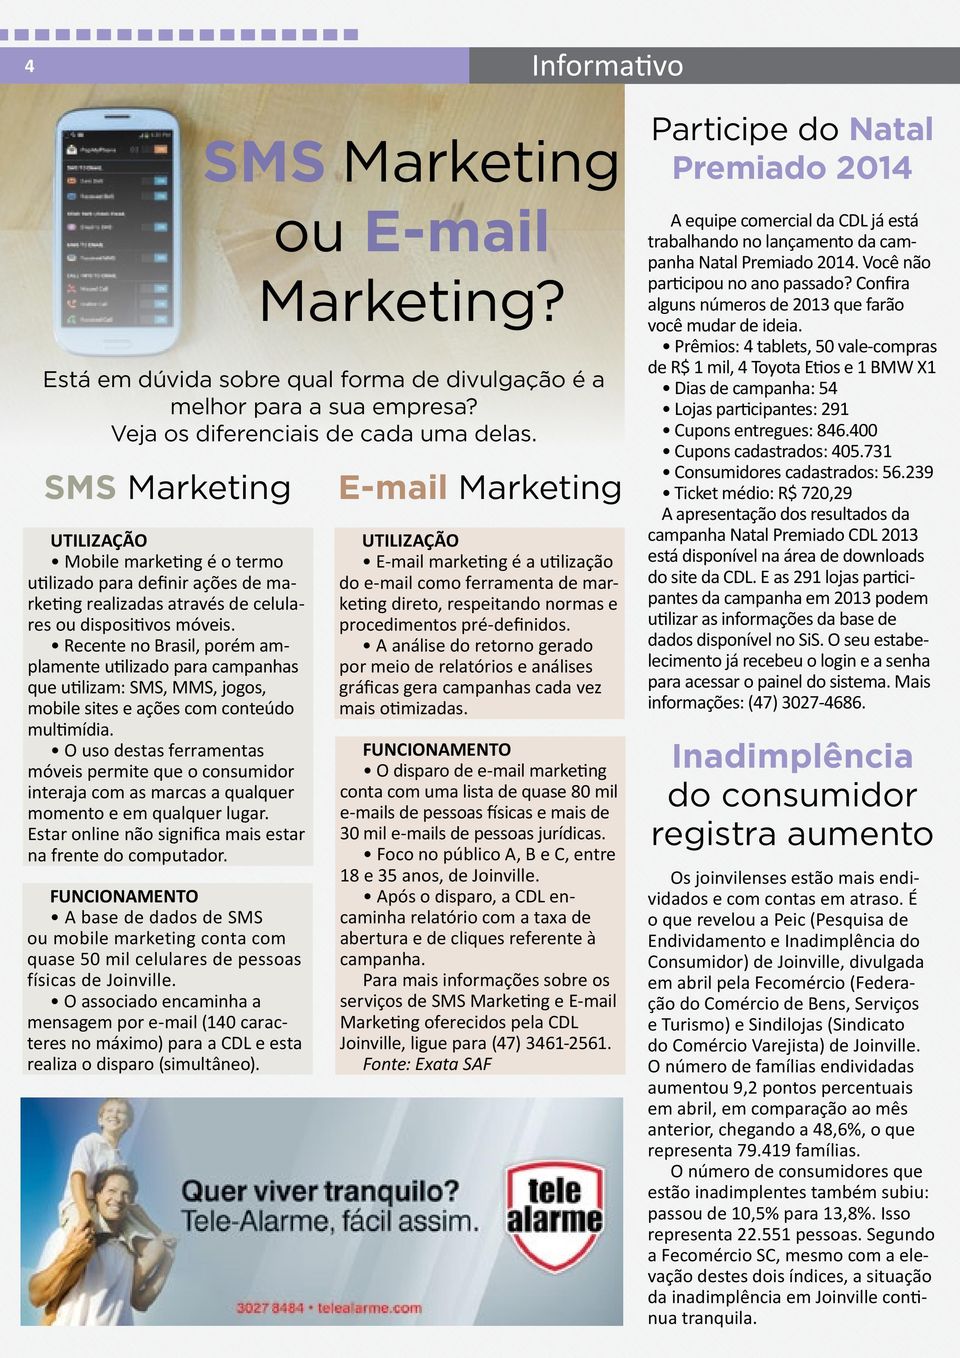 Recente no Brasil, porém amplamente utilizado para campanhas que utilizam: SMS, MMS, jogos, mobile sites e ações com conteúdo multimídia.